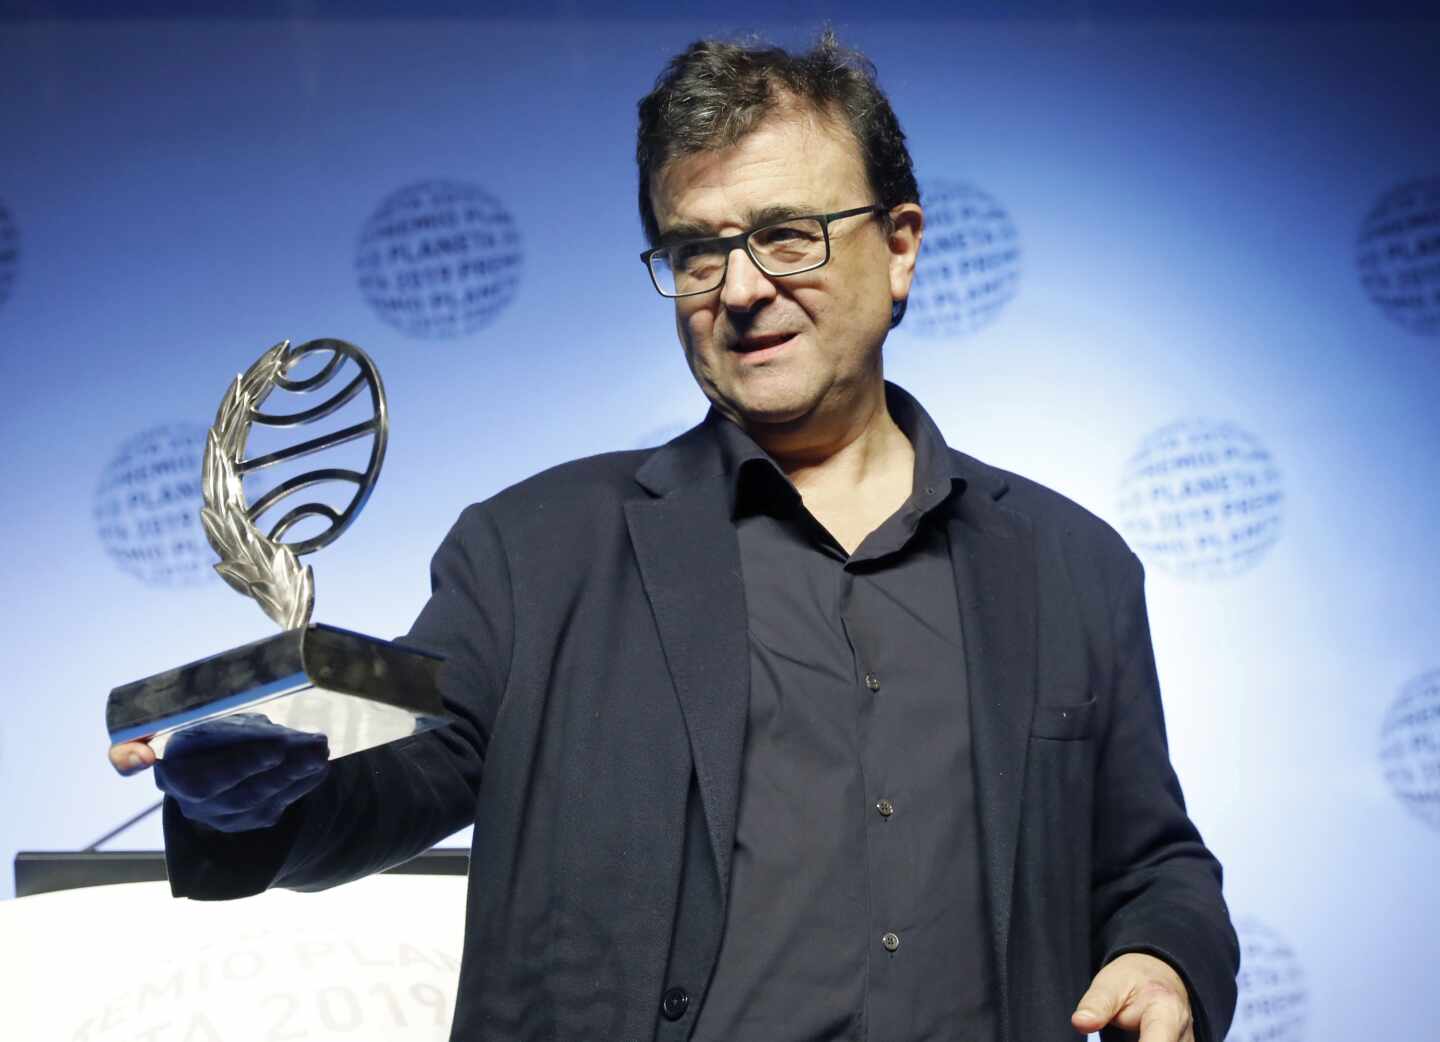 Javier Cercas, Premio Planeta con la historia de un mosso  héroe de los atentados de Cambrils